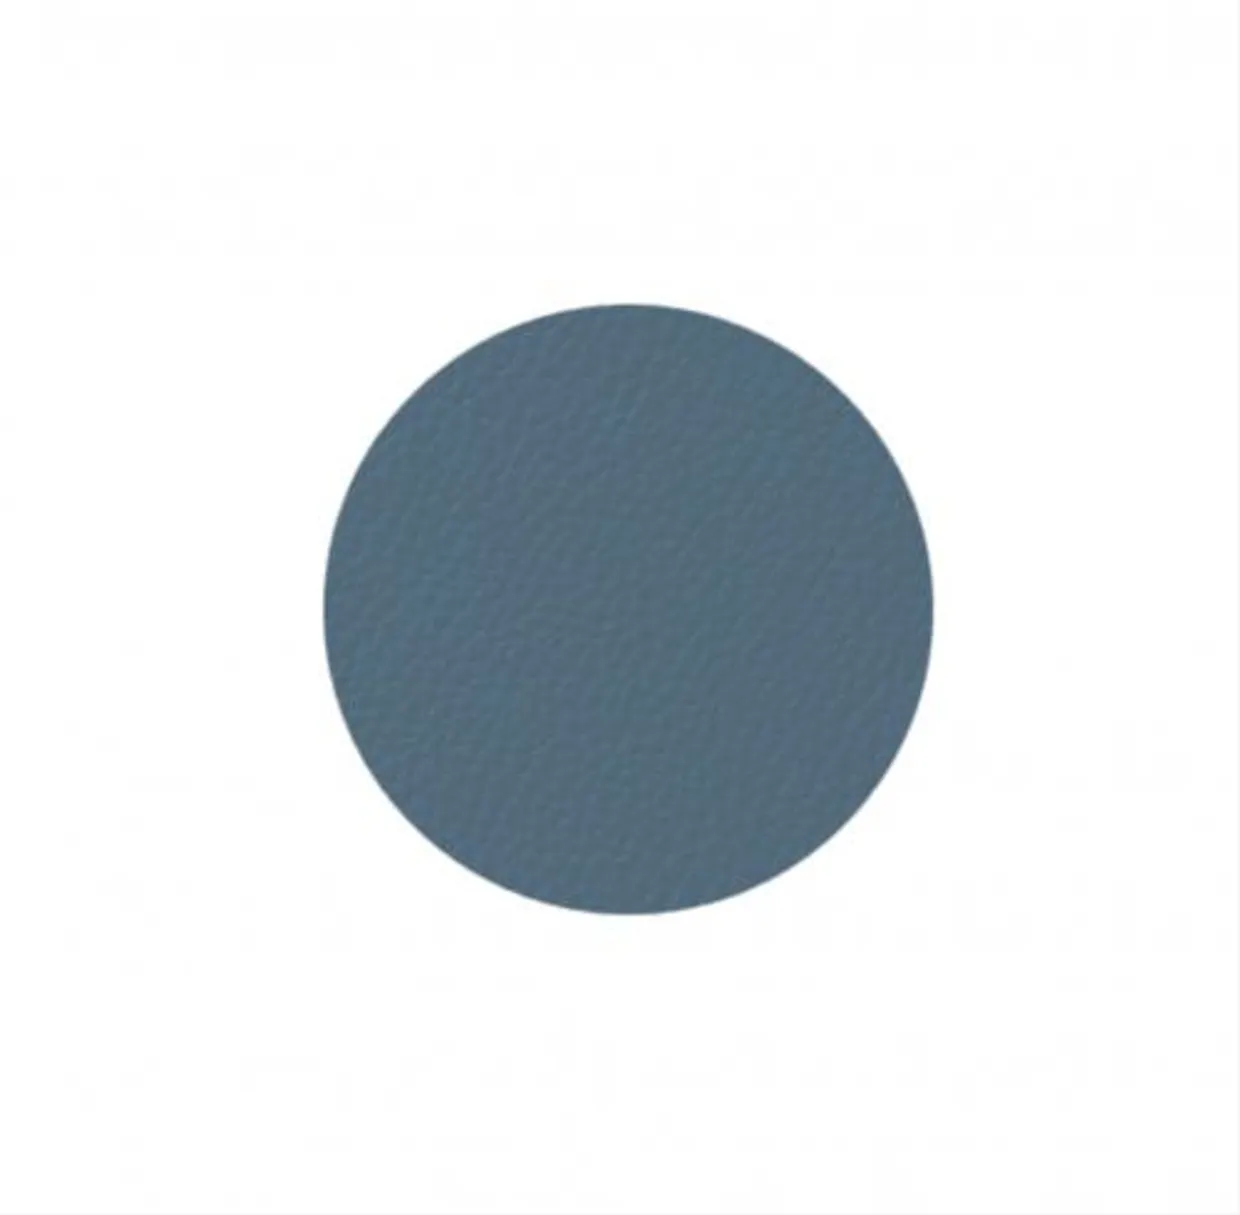 Onderzetters lederlook - blauw - set van 4